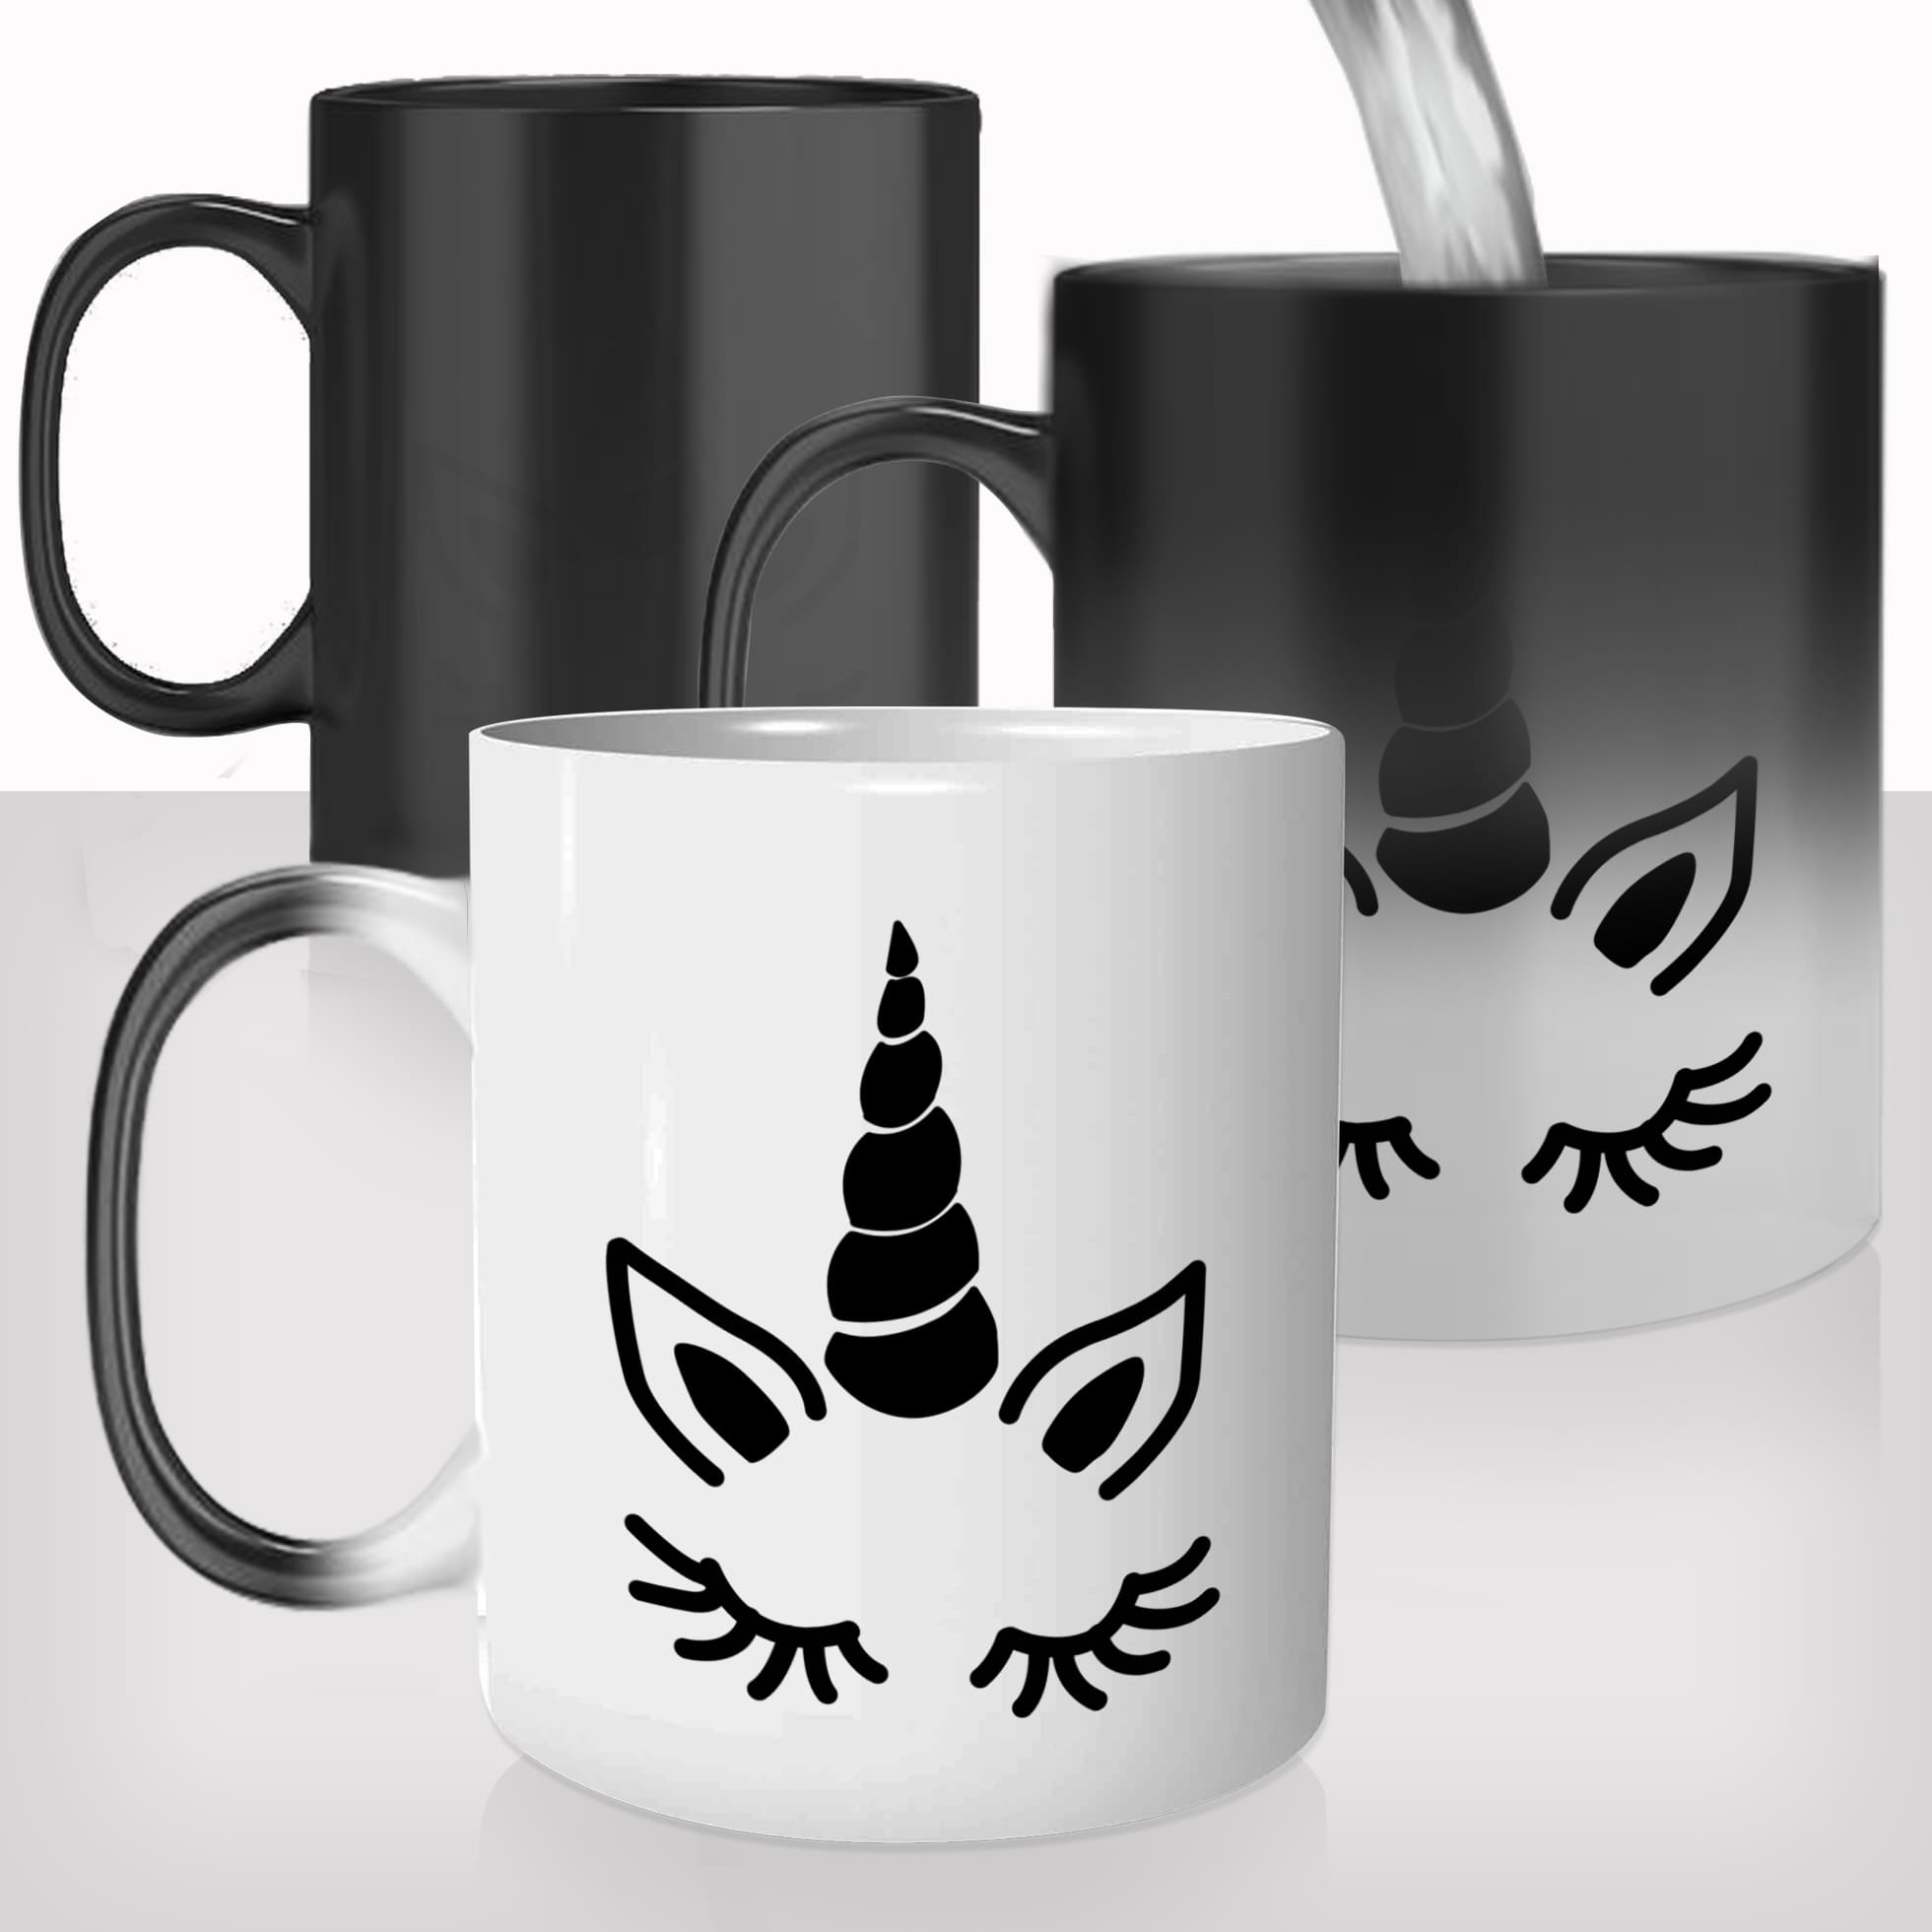 mug-magique-magic-tasse-originale-thermique-prénom-personnalisable-corne-jolie-licorne-unicorn-mignon-offrir-idée-cadeau-fun